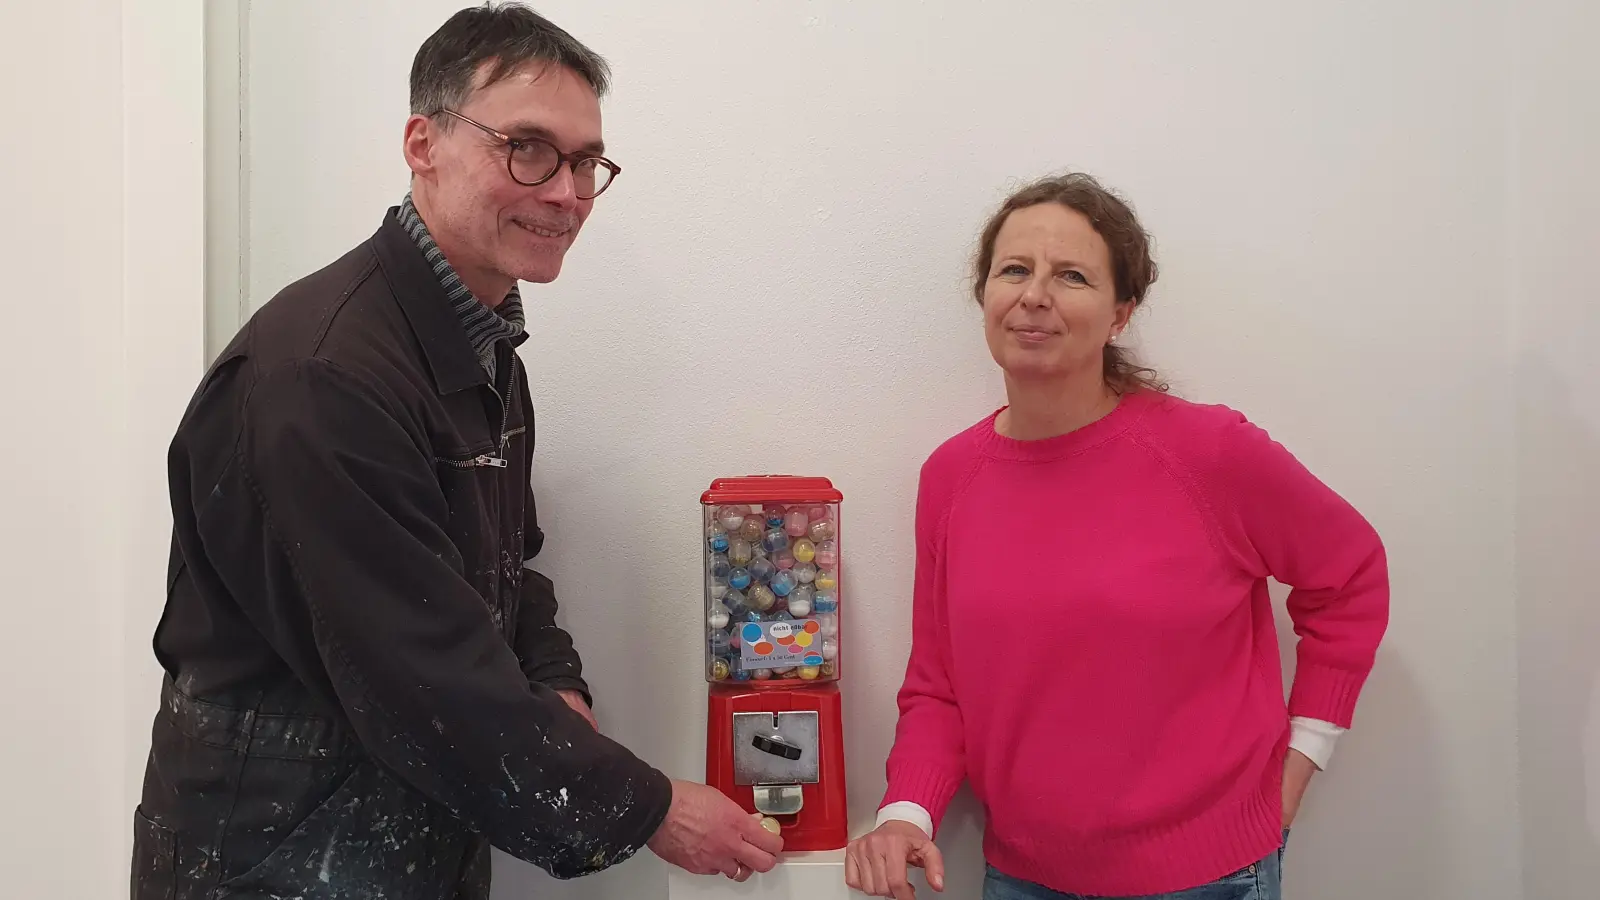 Ein bisschen Glitzer aus dem Kaugummiautomaten: Gerhard Rießbeck und Stefanie Pöllot freuen sich auf ihre gemeinsame Ausstellung. (Foto: Anna Franck)